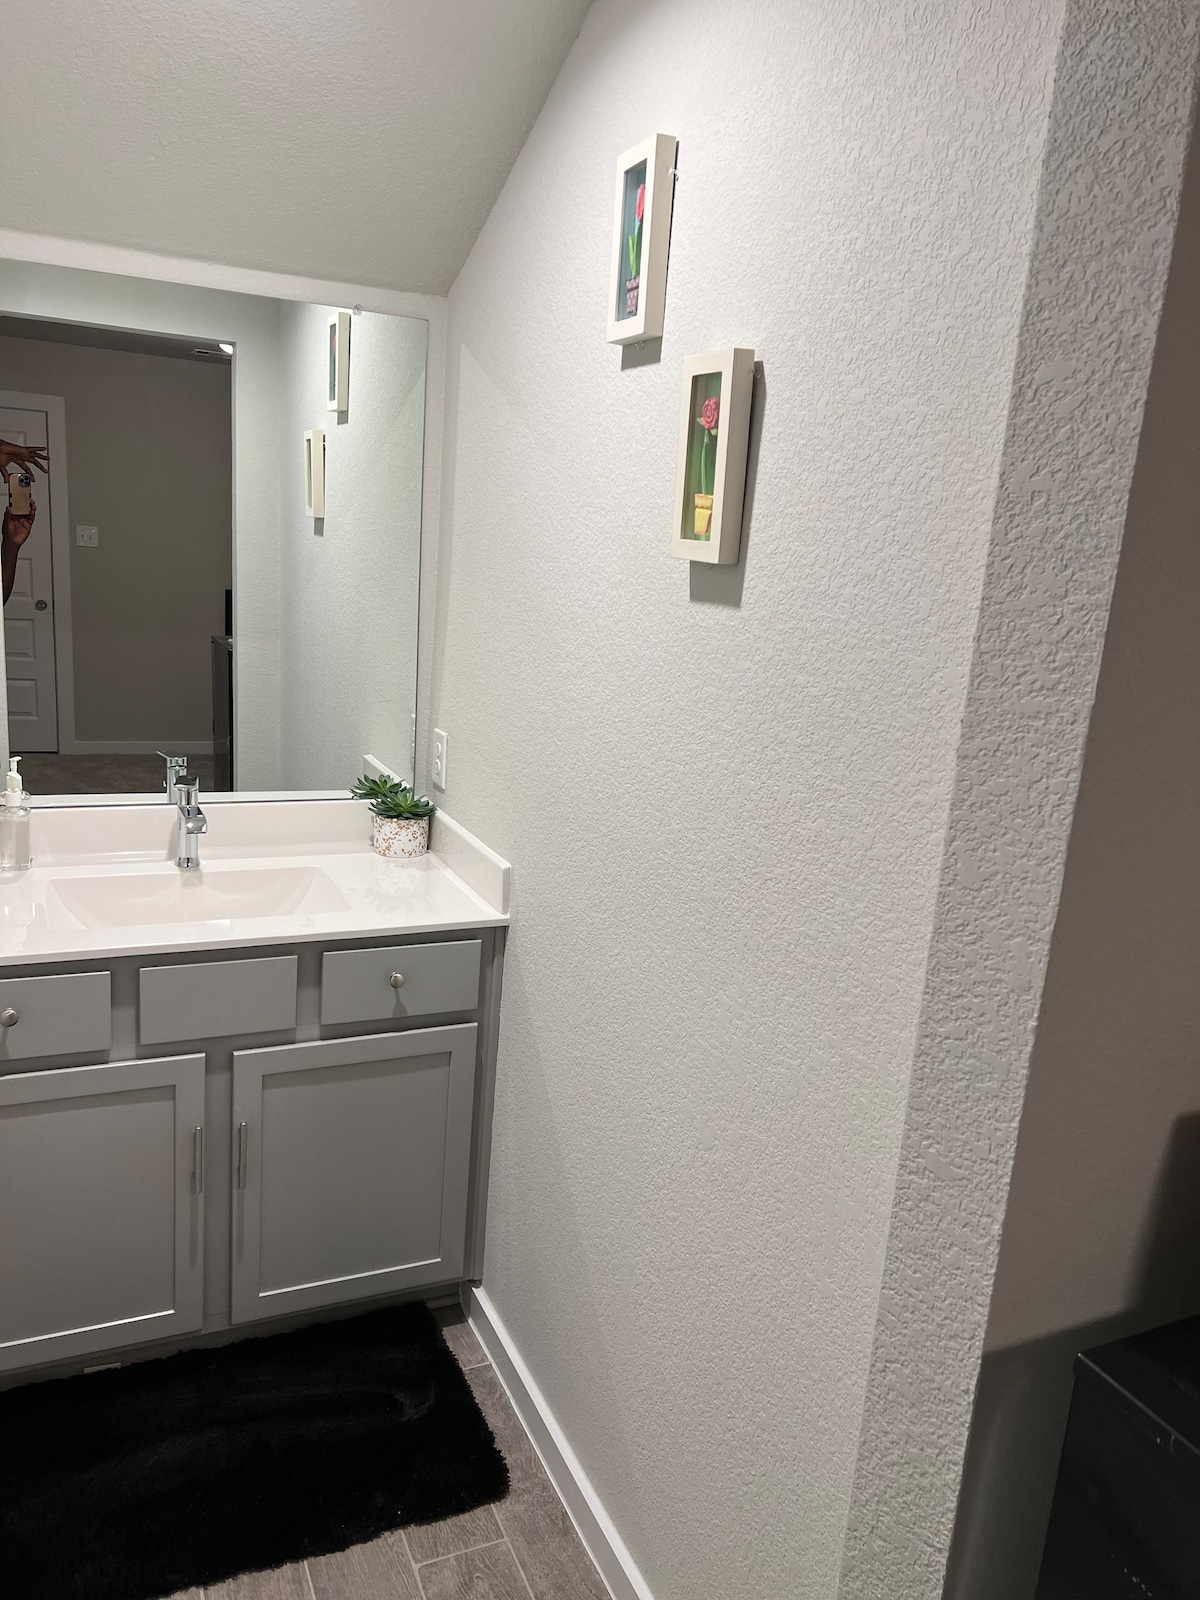 德克萨斯州休斯敦带独立卫生间的房间。